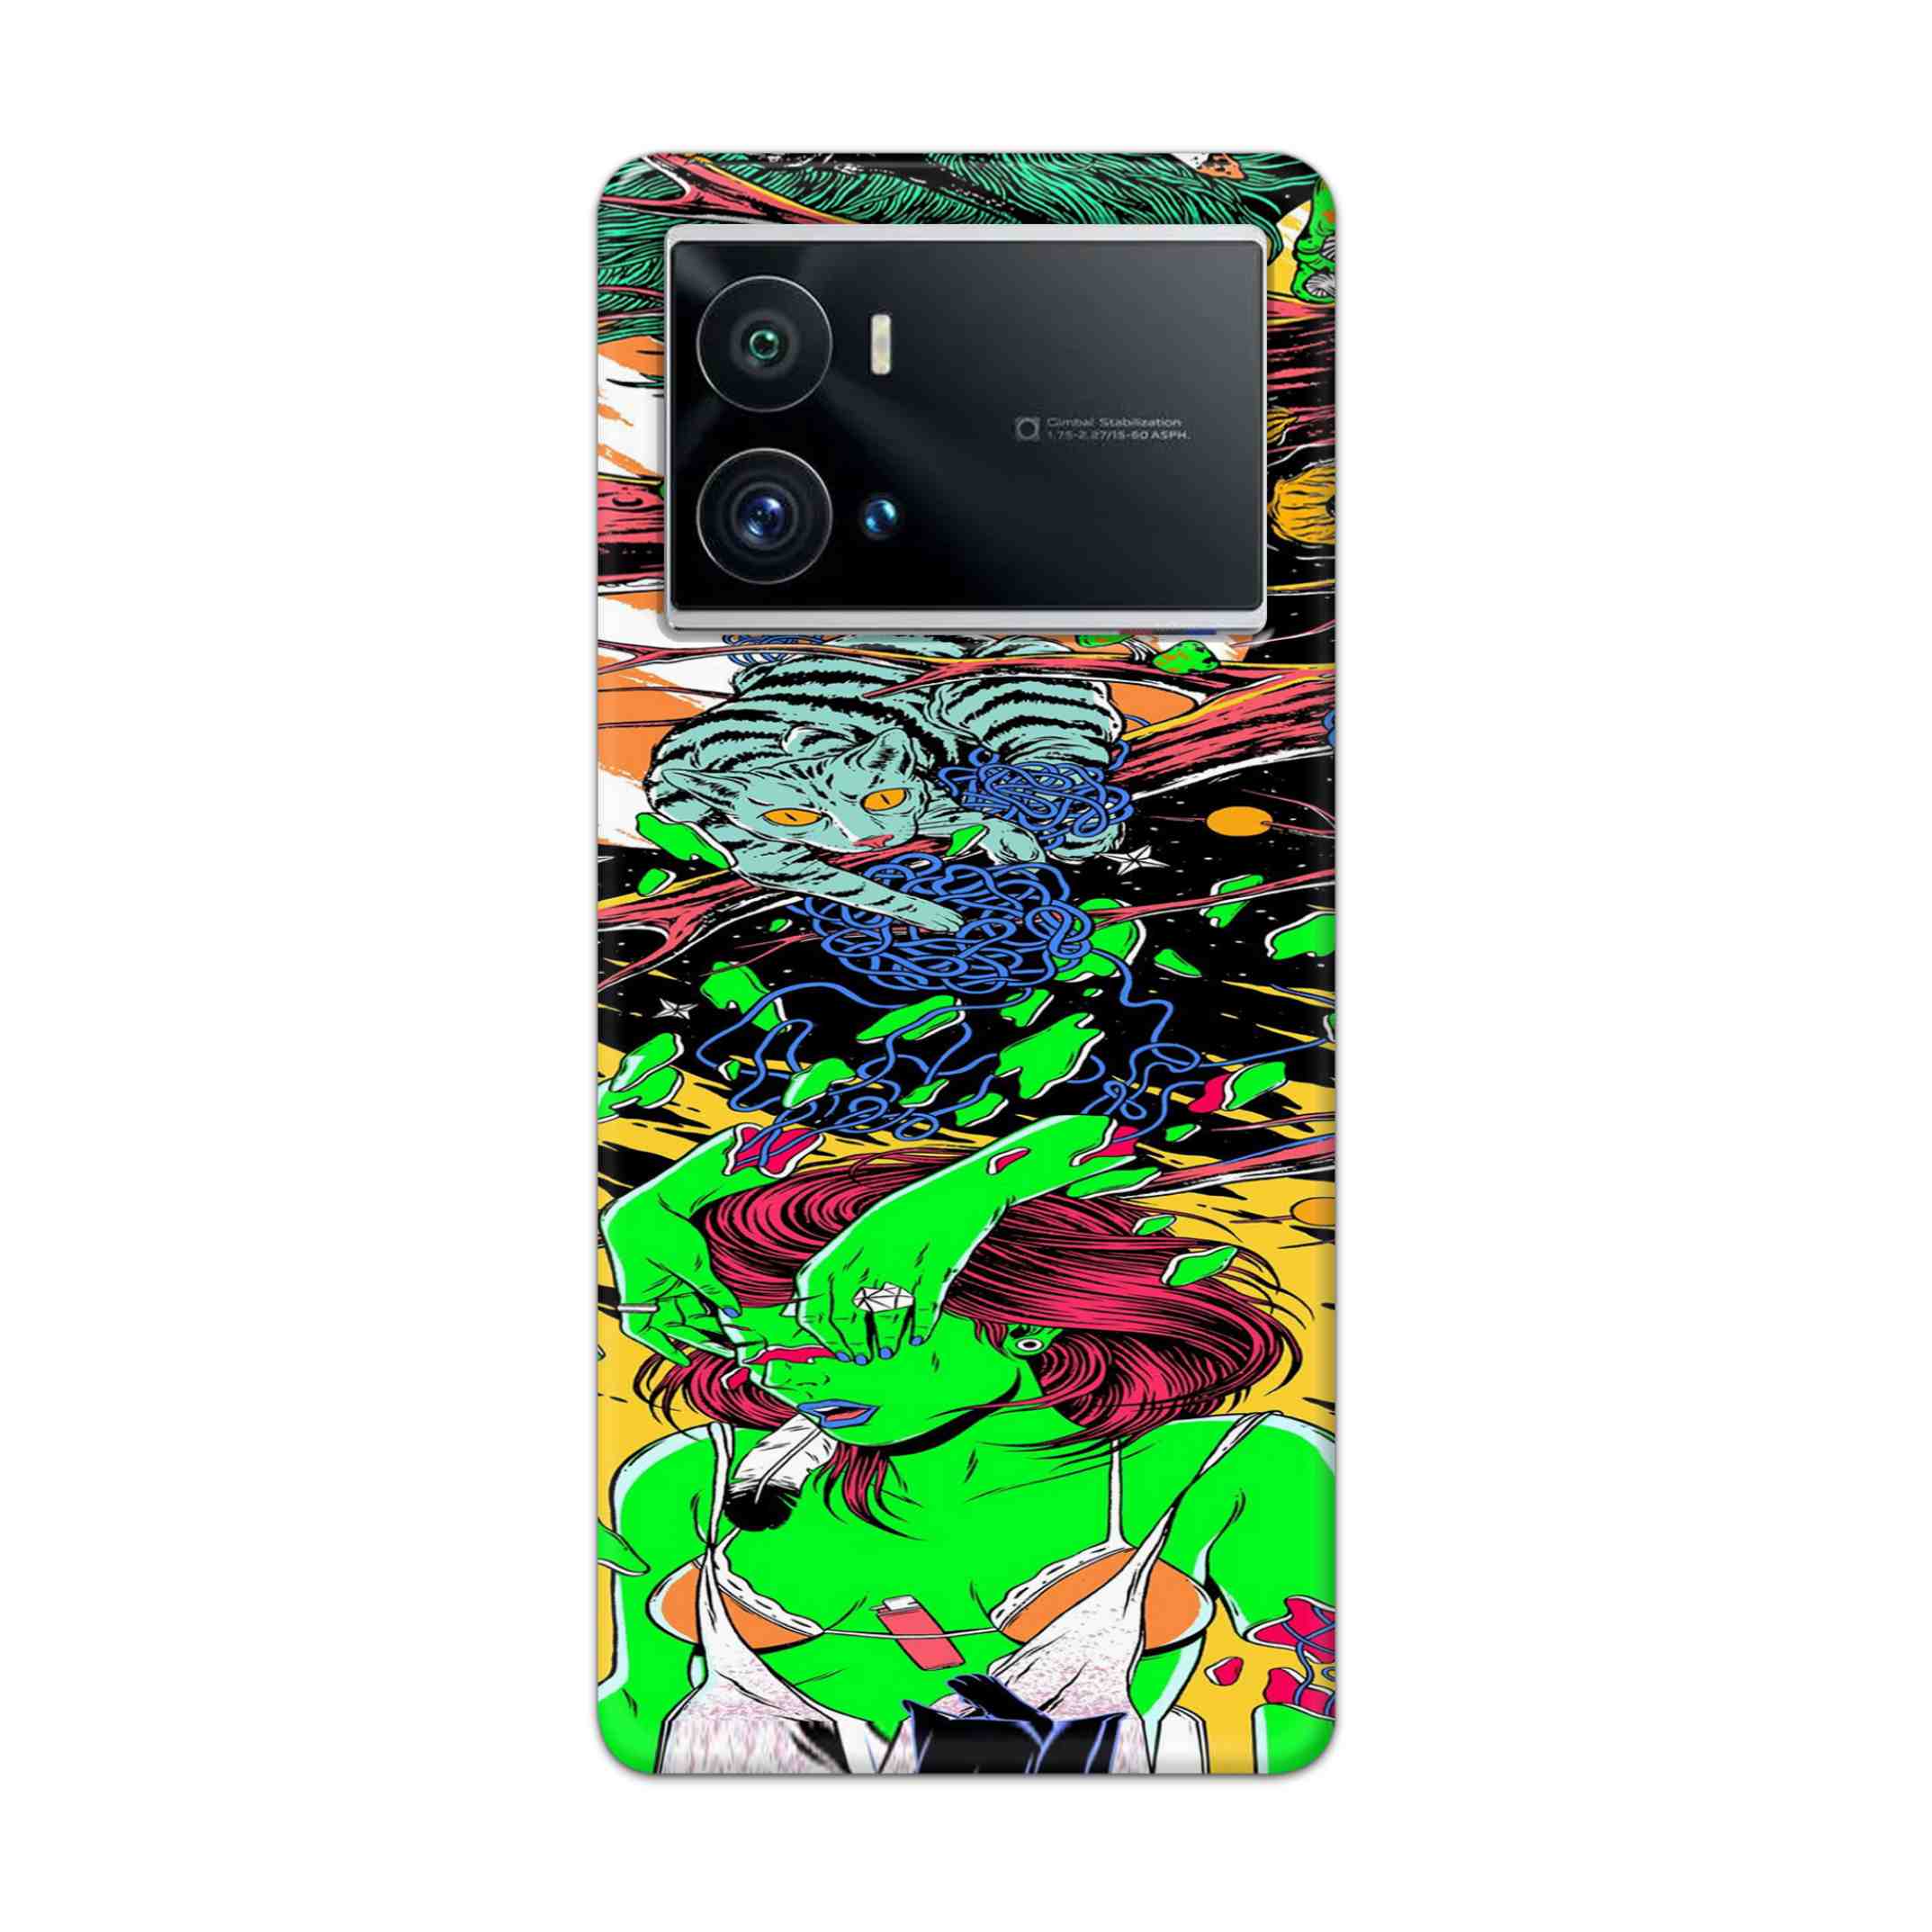 Buy Green Girl Art Hard Back Mobile Phone Case Cover For iQOO 9 Pro 5G Online